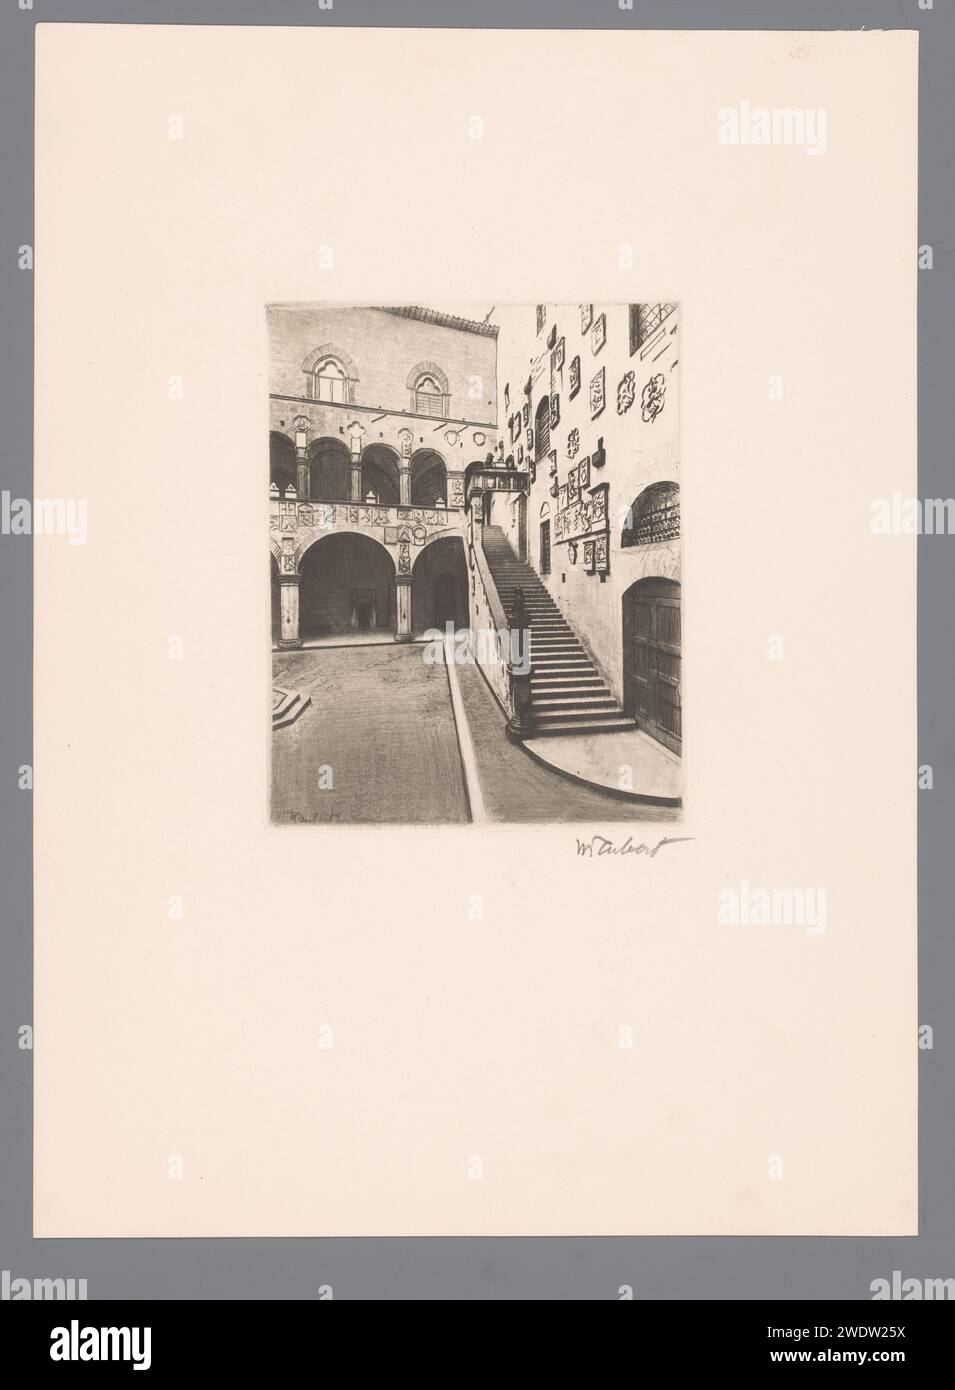 Innenhof des Palazzo del Bargello in Florenz, Guglielmo Taubert, 1886 - 1927 Druck Florenz Papier, das den Blick auf die Stadt im Allgemeinen graviert; „Veduta“. Treppenhaus Florenz. Palazzo del Bargello Stockfoto